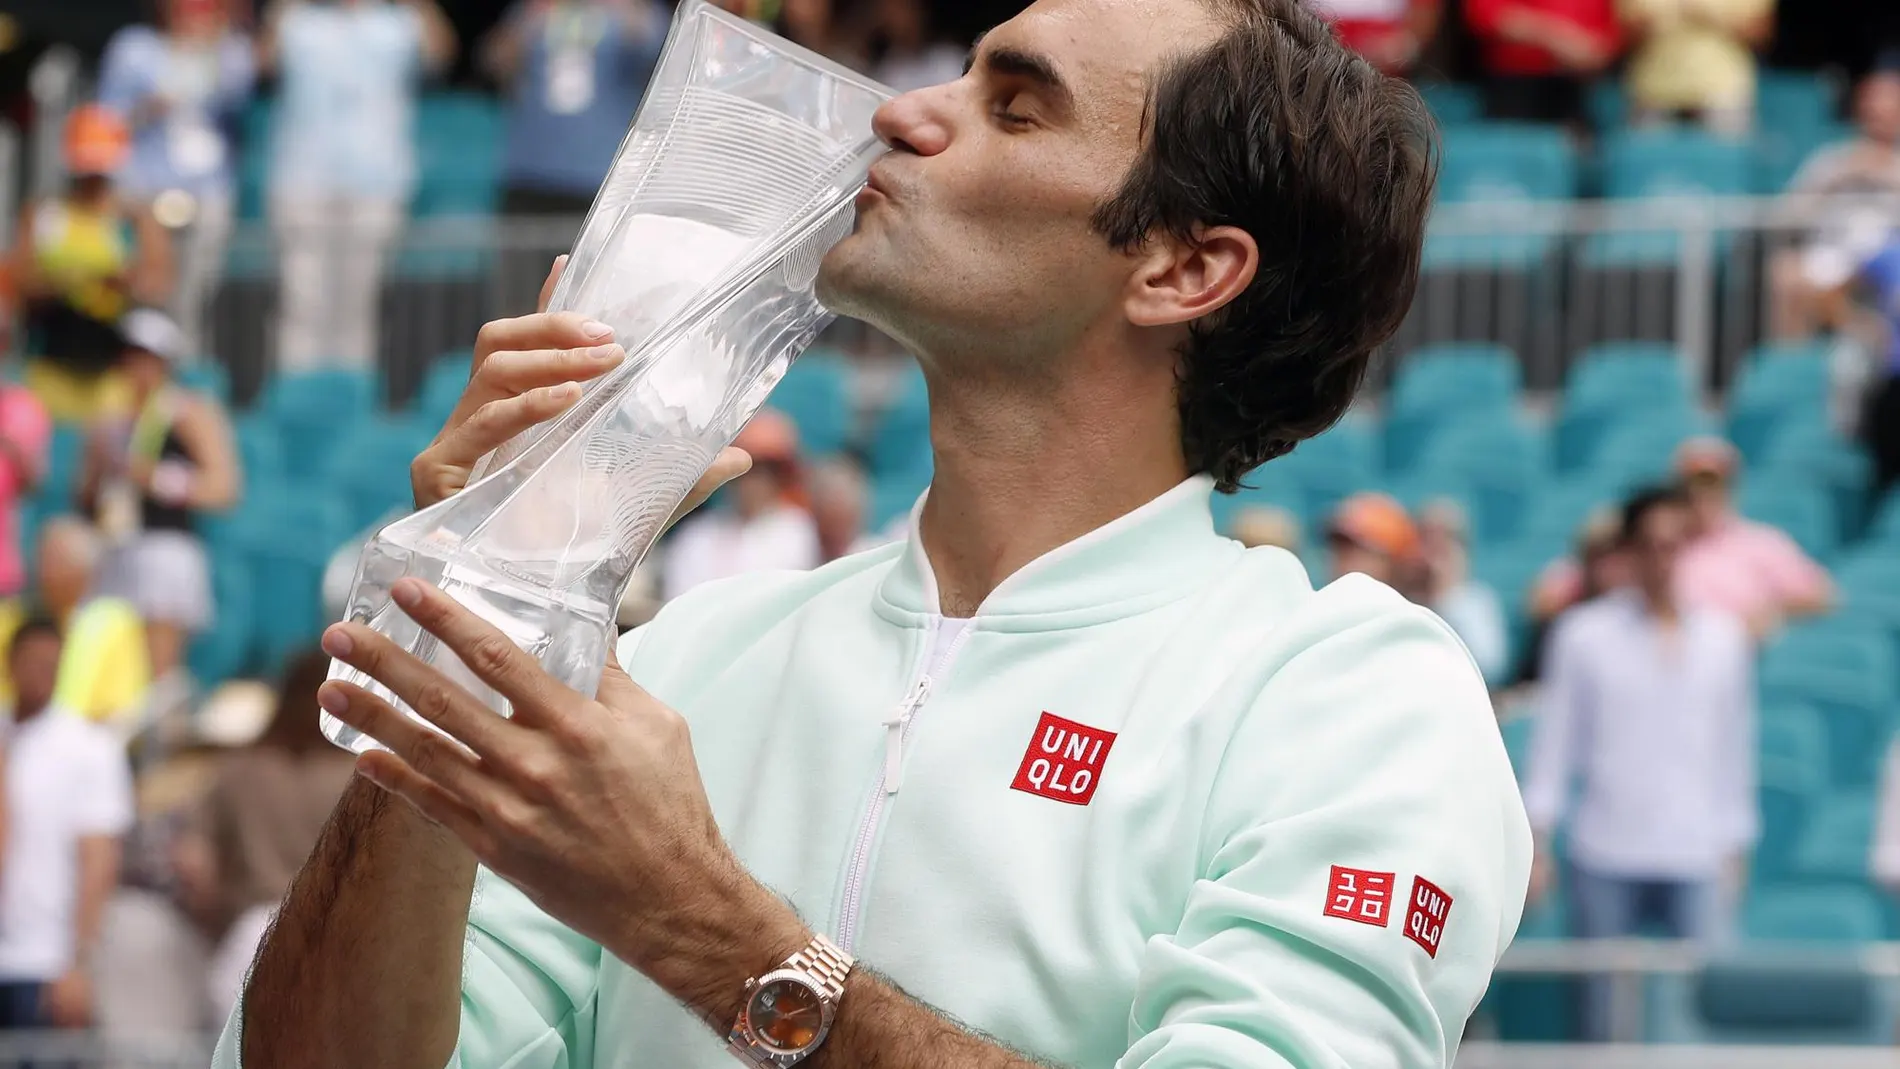 Federer besa el título de Miami